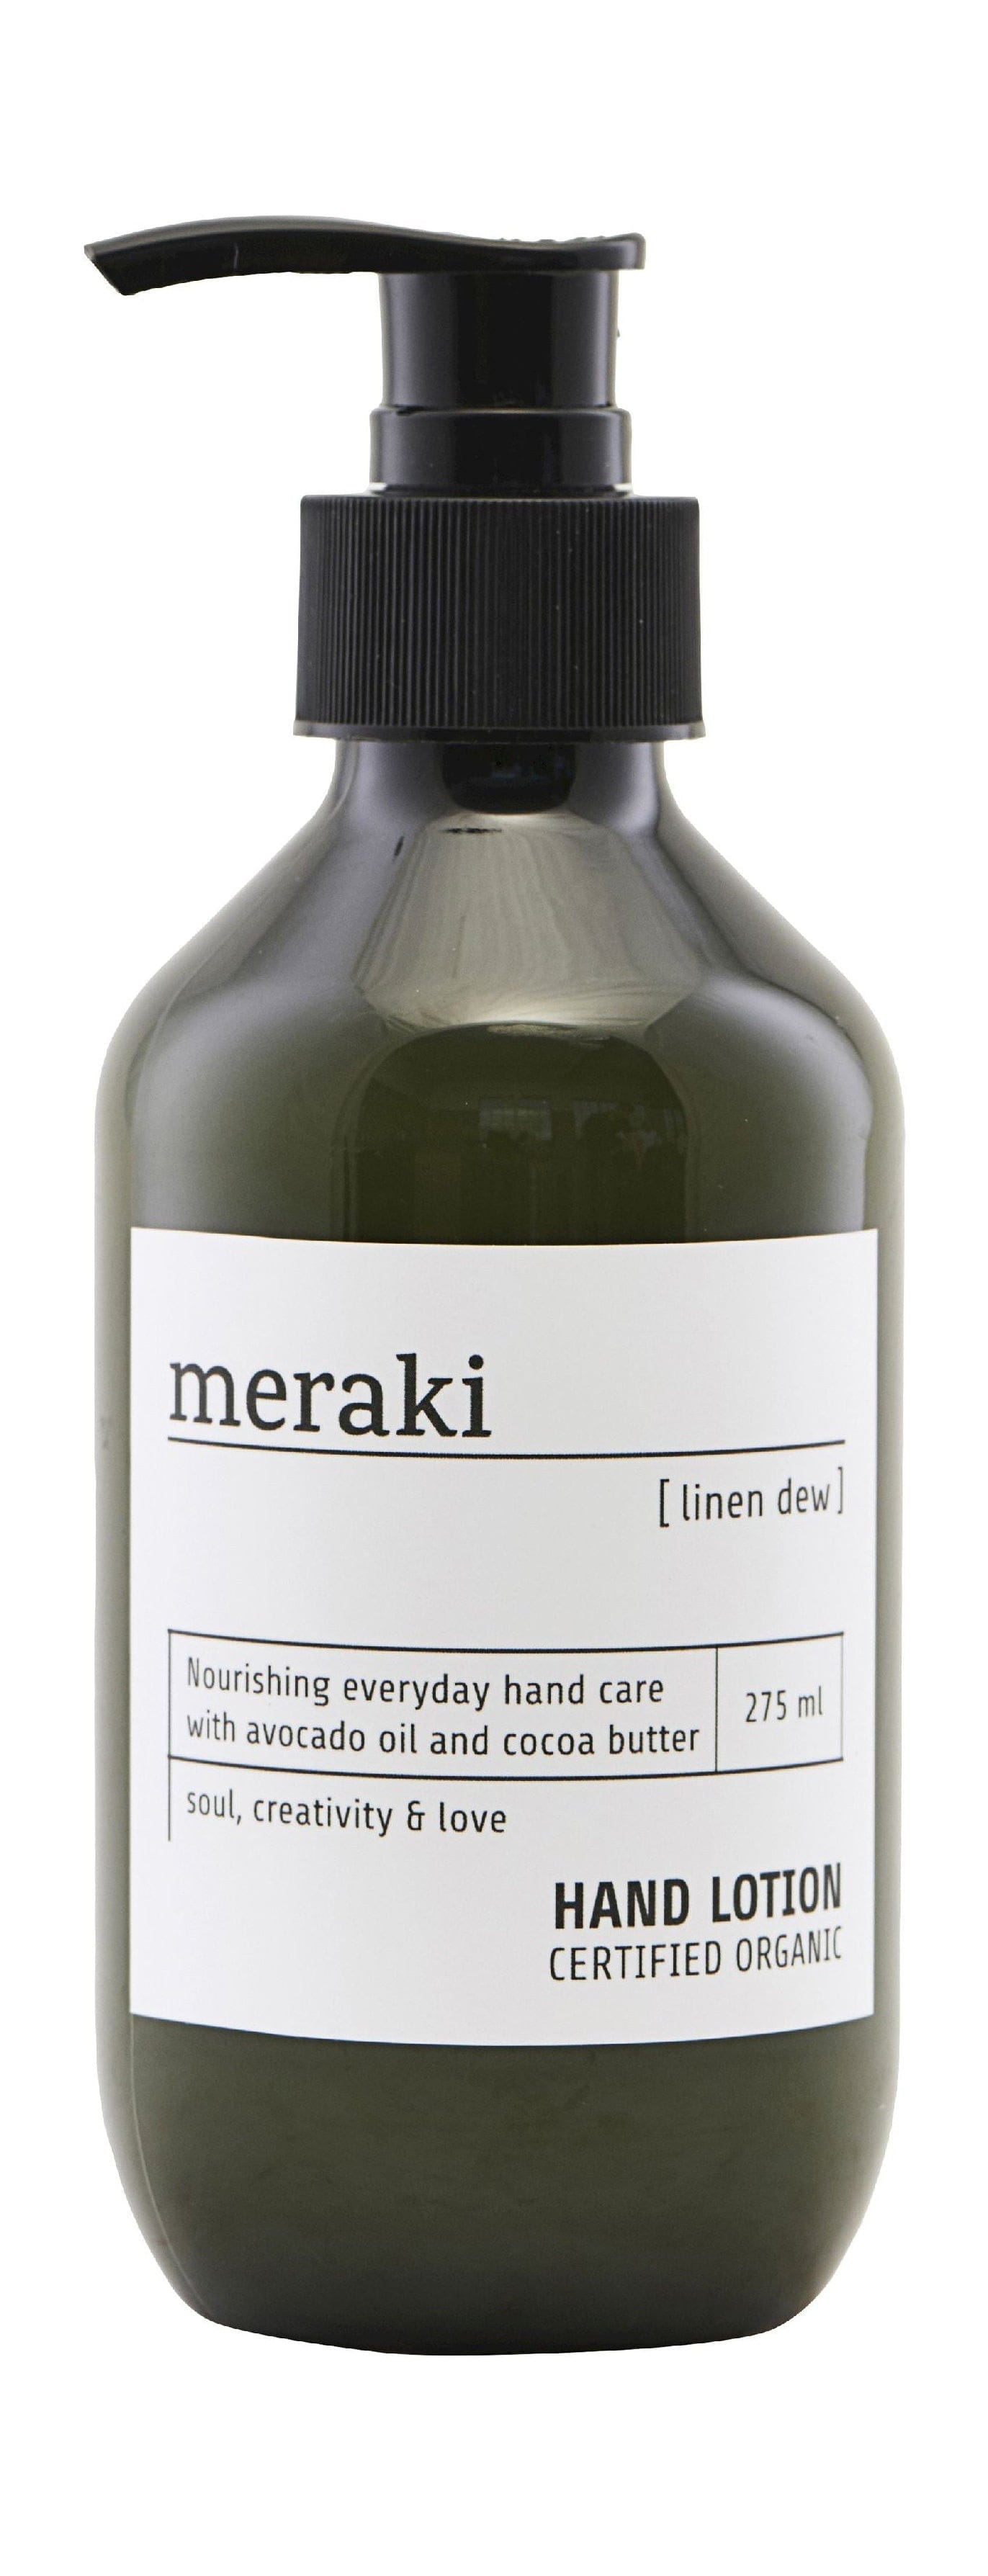 Meraki Handlotion 275 ml, Line Dew